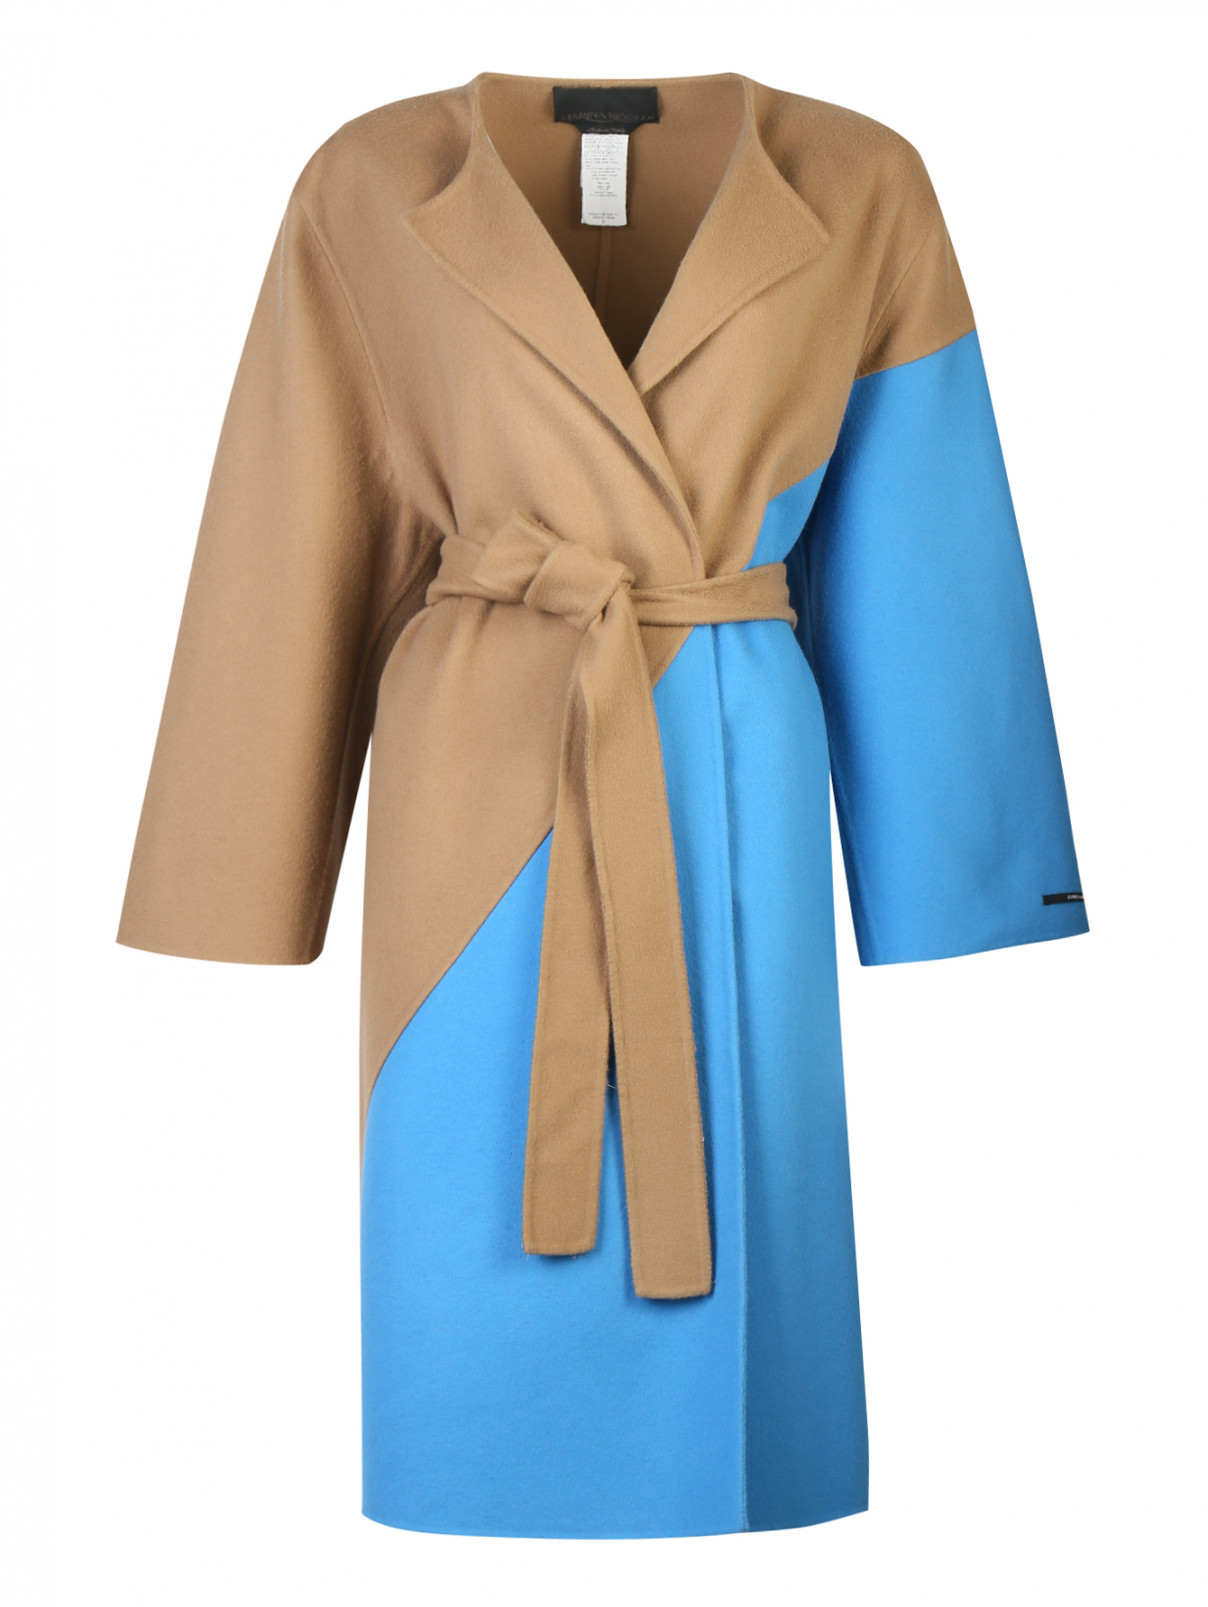 Пальто из шерсти, удлиненное, с поясом Marina Rinaldi  –  Общий вид  – Цвет:  Мультиколор